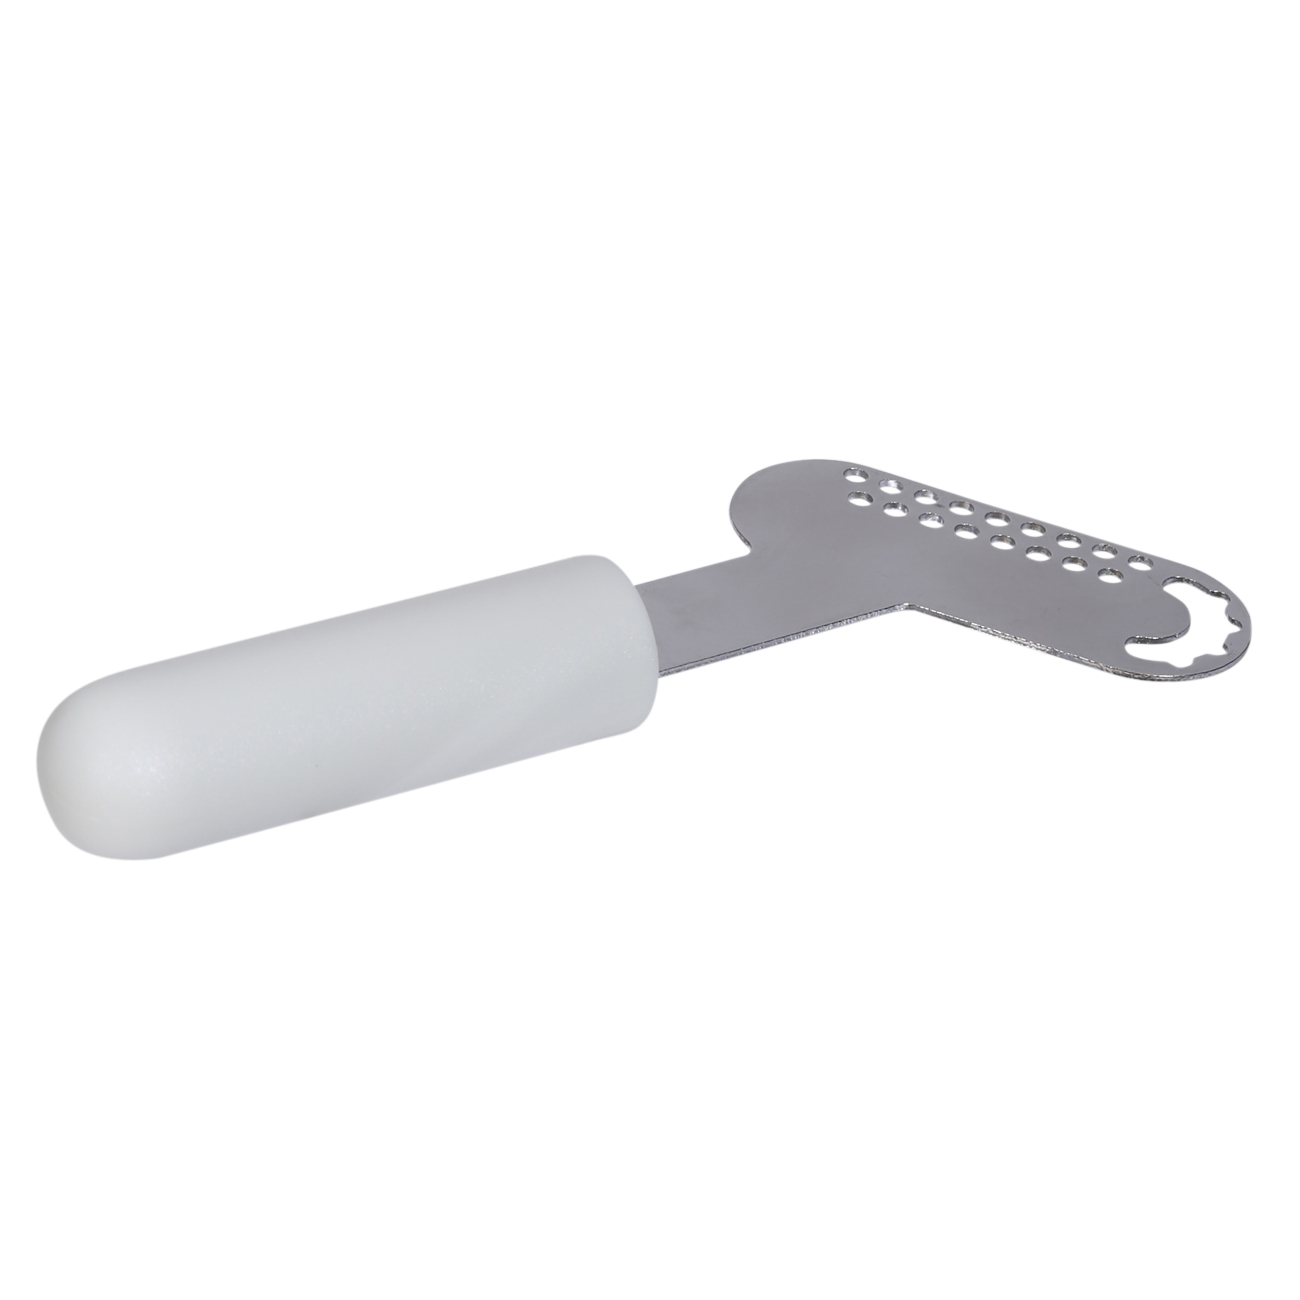 Масленка, 16, с ножом, пластик/бук, прямоугольная, молочная, Soft kitchen изображение № 3